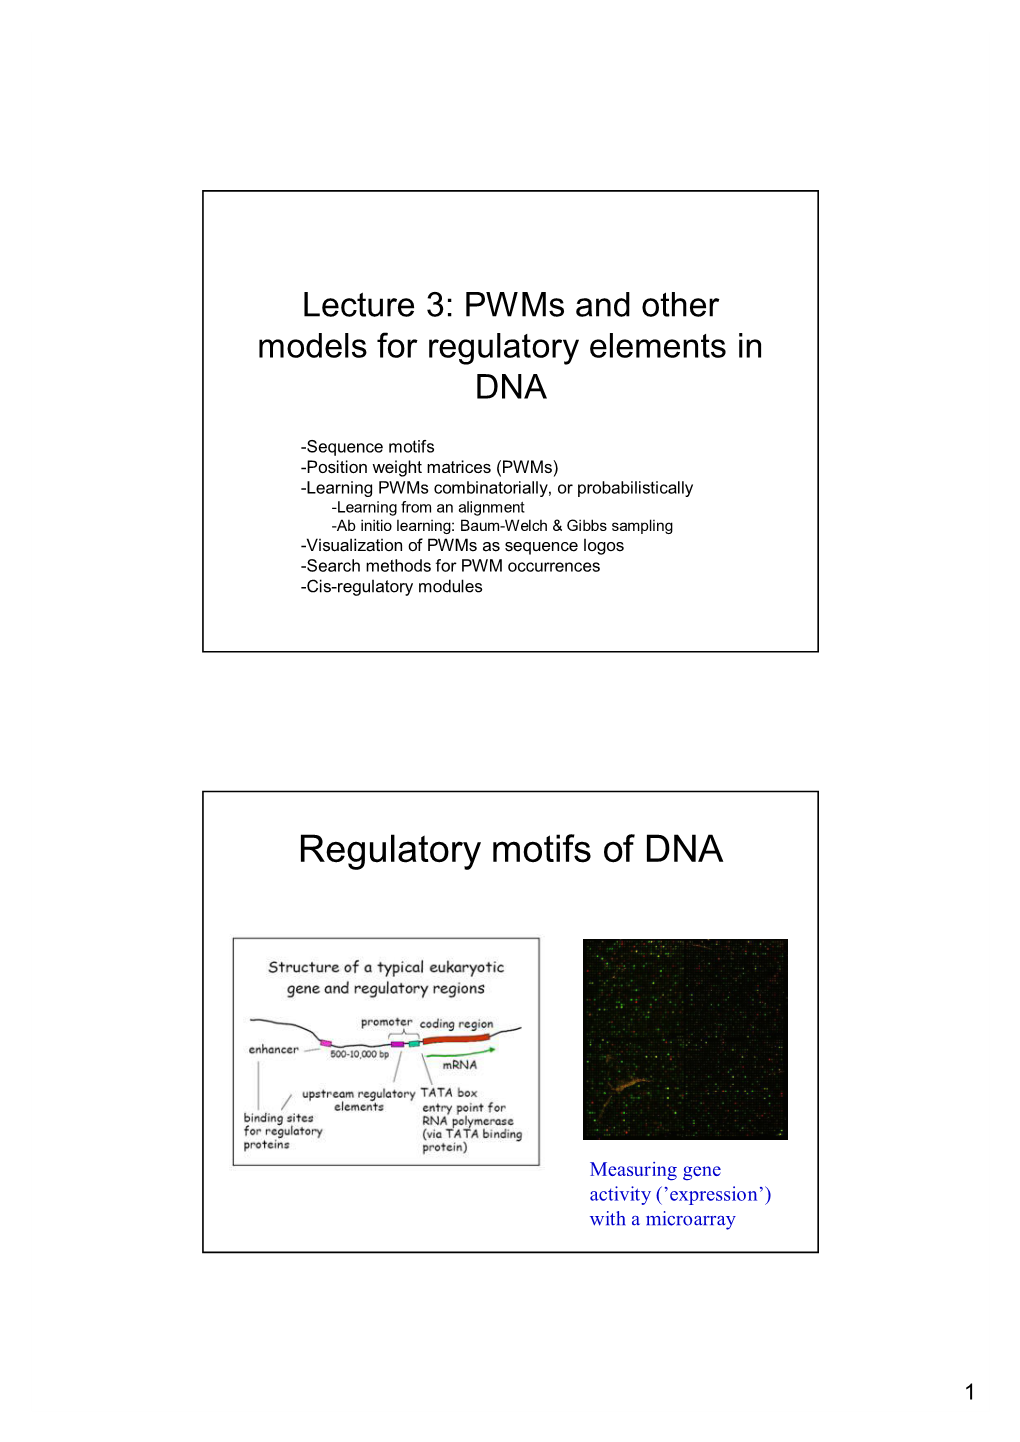 Regulatory Motifs of DNA